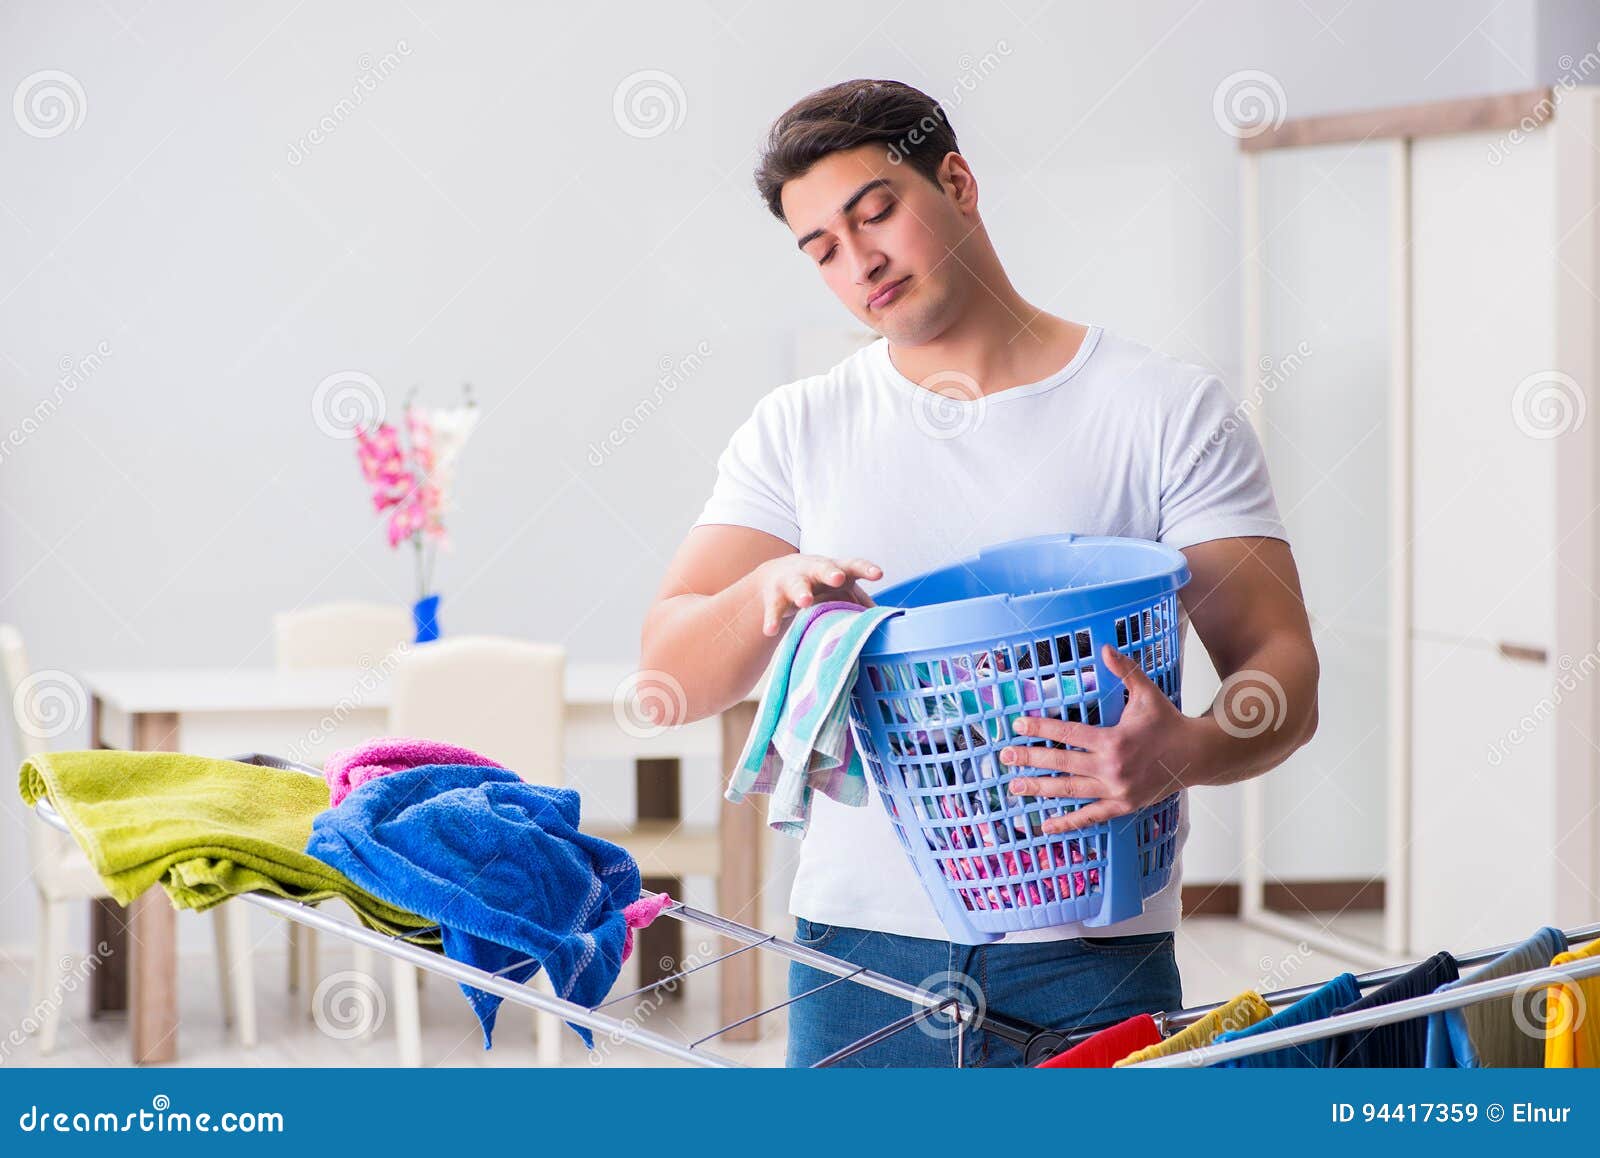 Did the laundry. Мужик стирает белье. Муж домохозяин. Стирать белье. Мальчик домохозяин.